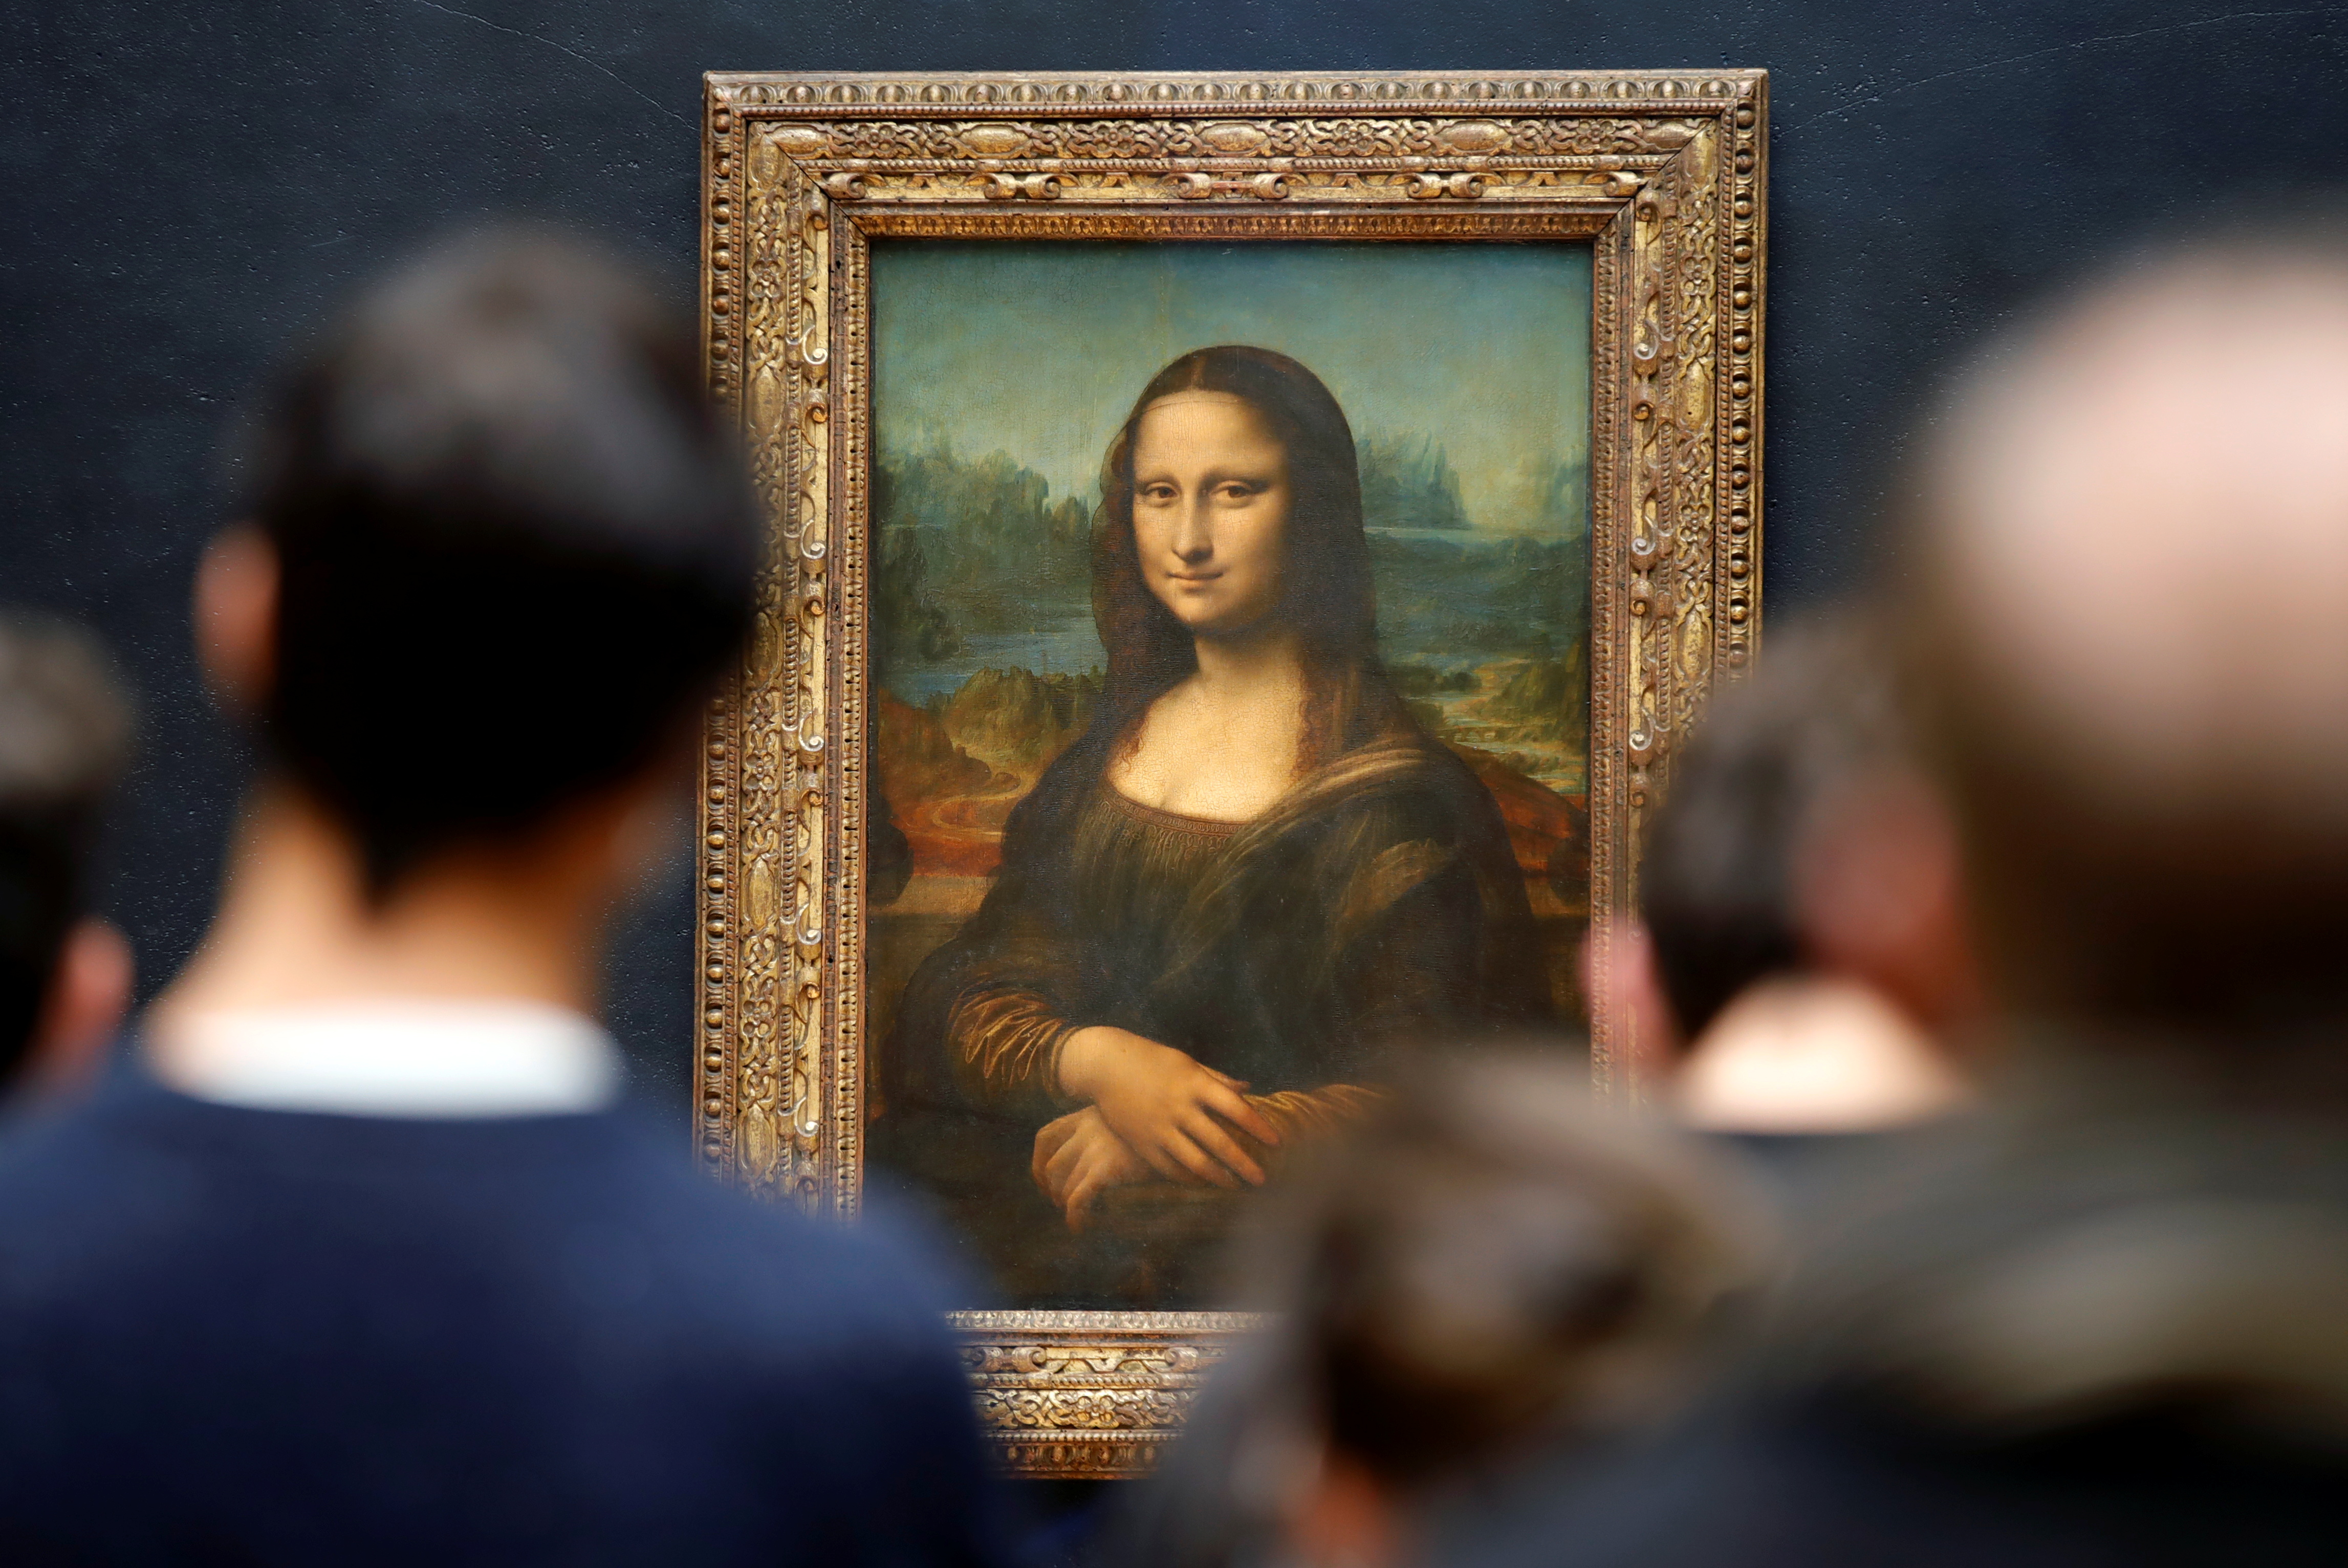 La sonrisa de la Mona Lisa sirve para explicar el estado actual de la economía mundial (REUTERS/Sarah Meyssonnier)